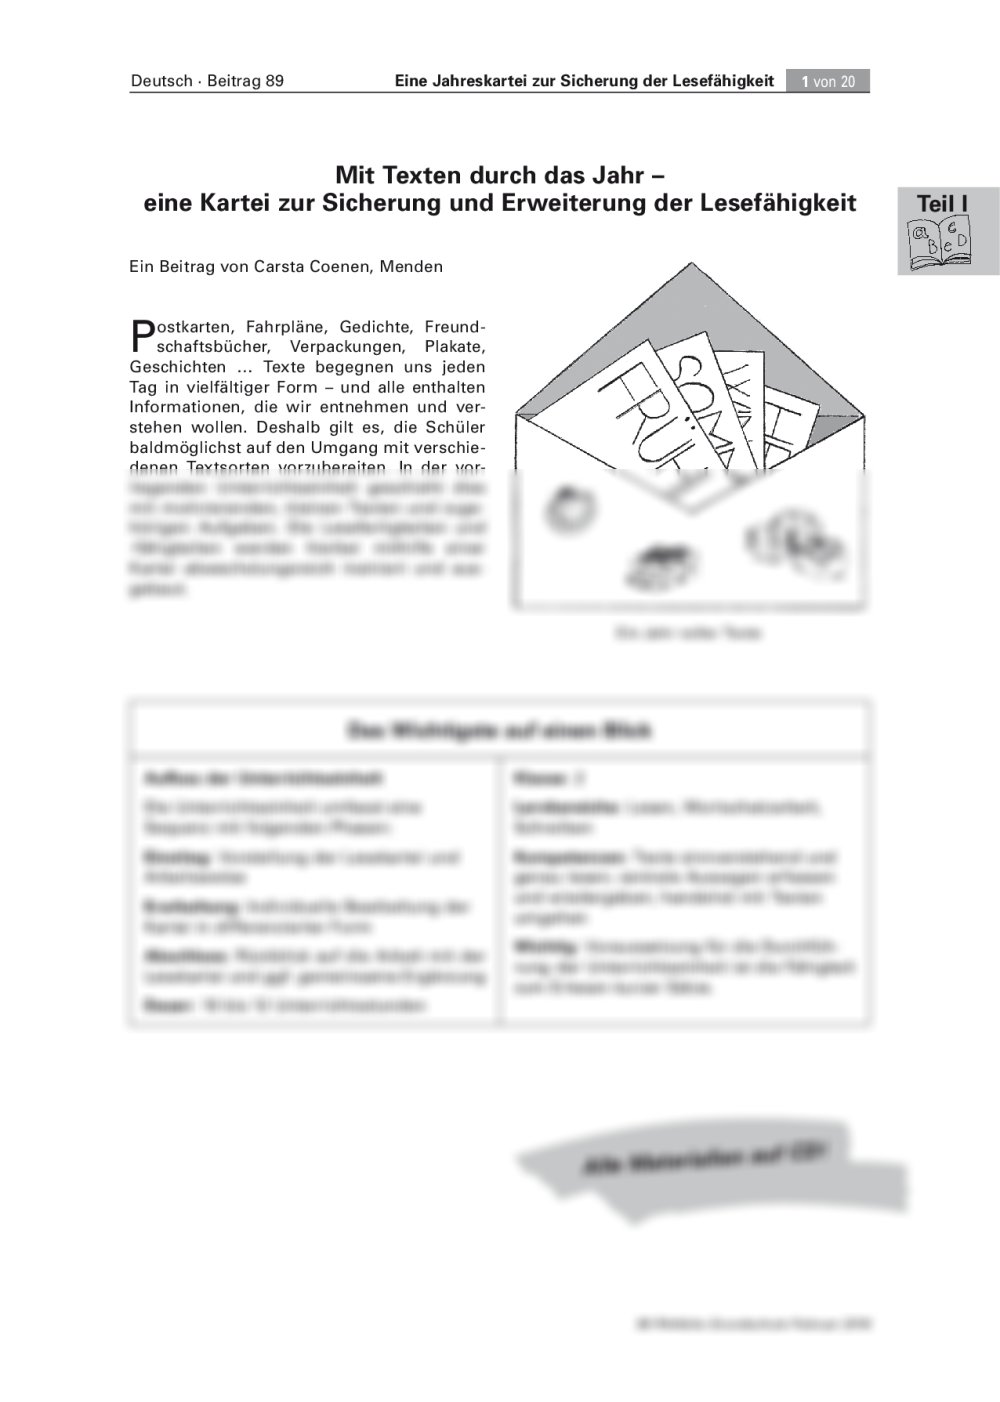 Eine Kartei zur Sicherung und Erweiterung der Lesefähigkeit - Seite 1